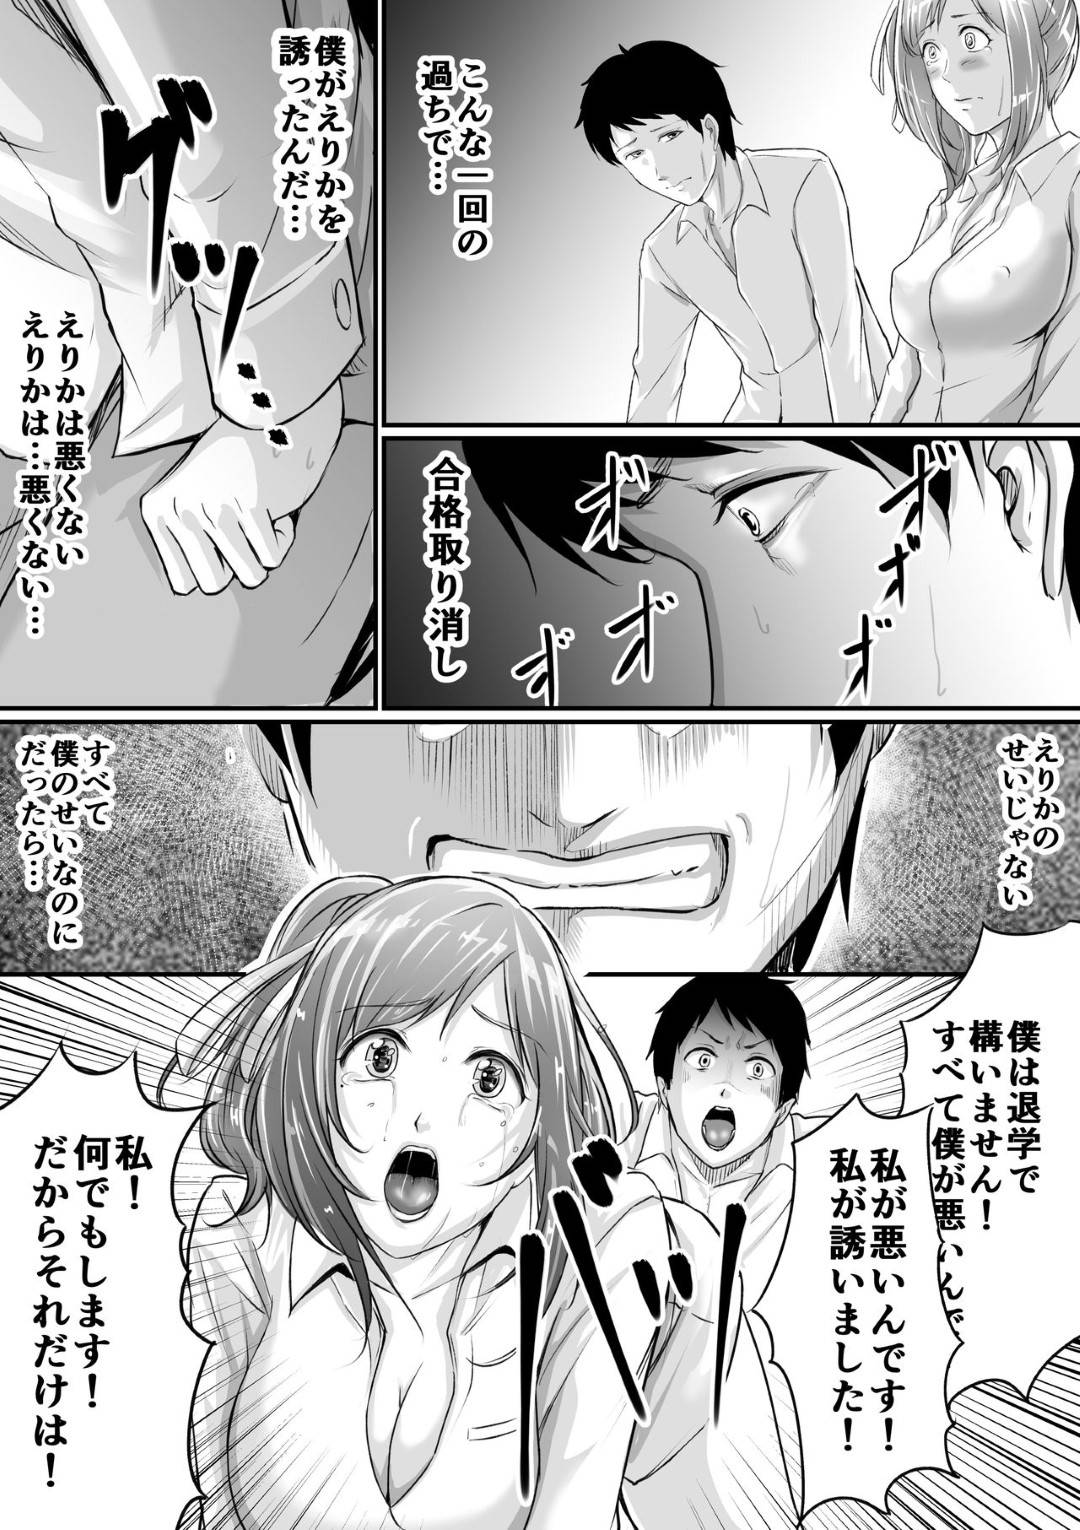 【エロ漫画】彼氏と体育倉庫でHしているのがバレた巨乳JKは、先生にフェラを強要される…【あおいせな】